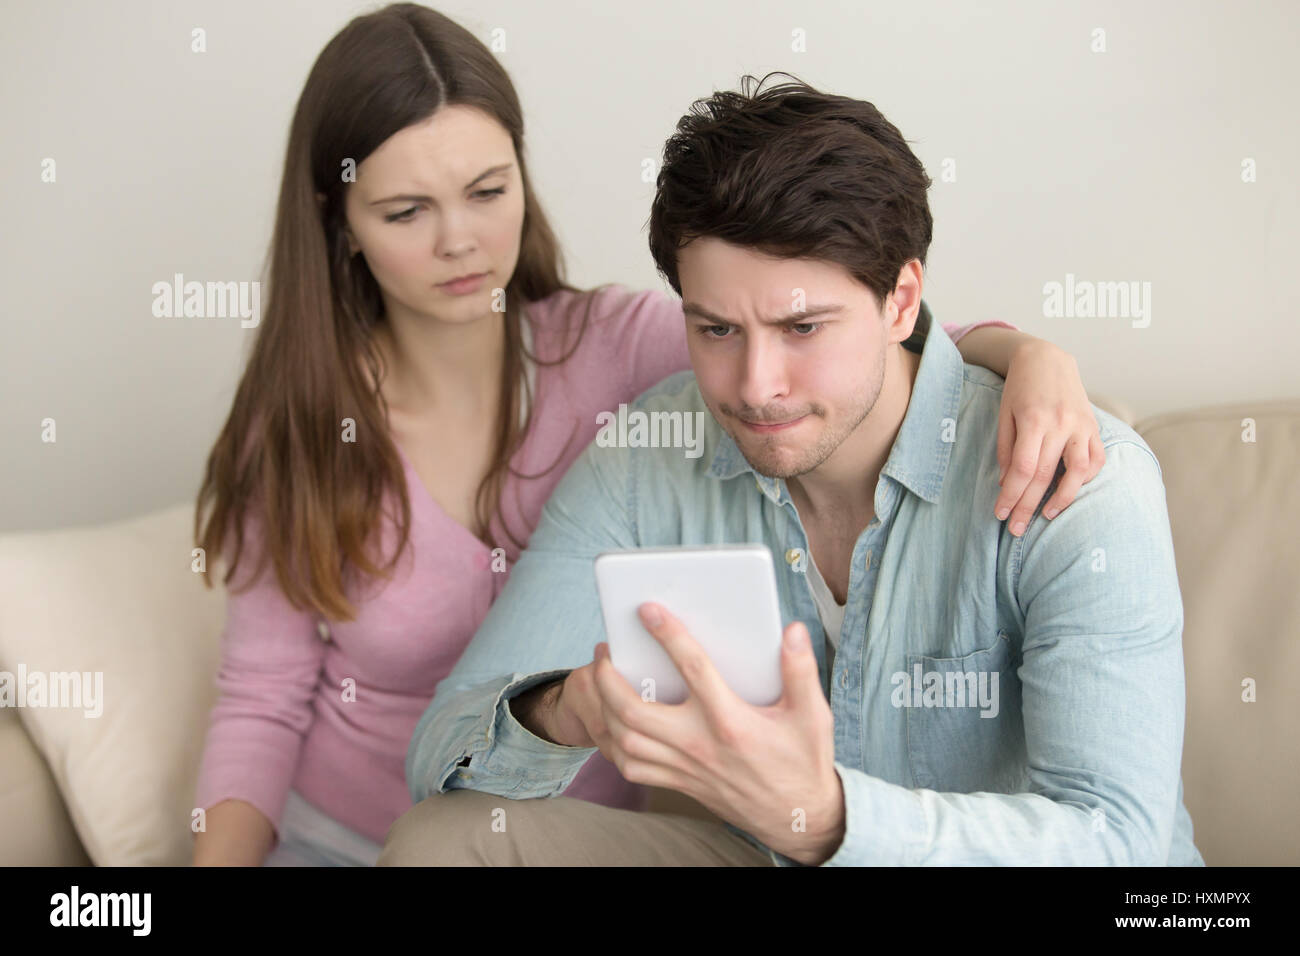 Jeune homme à l'aide d'une tablette, d'avoir des problèmes, anxieux et petite amie Banque D'Images